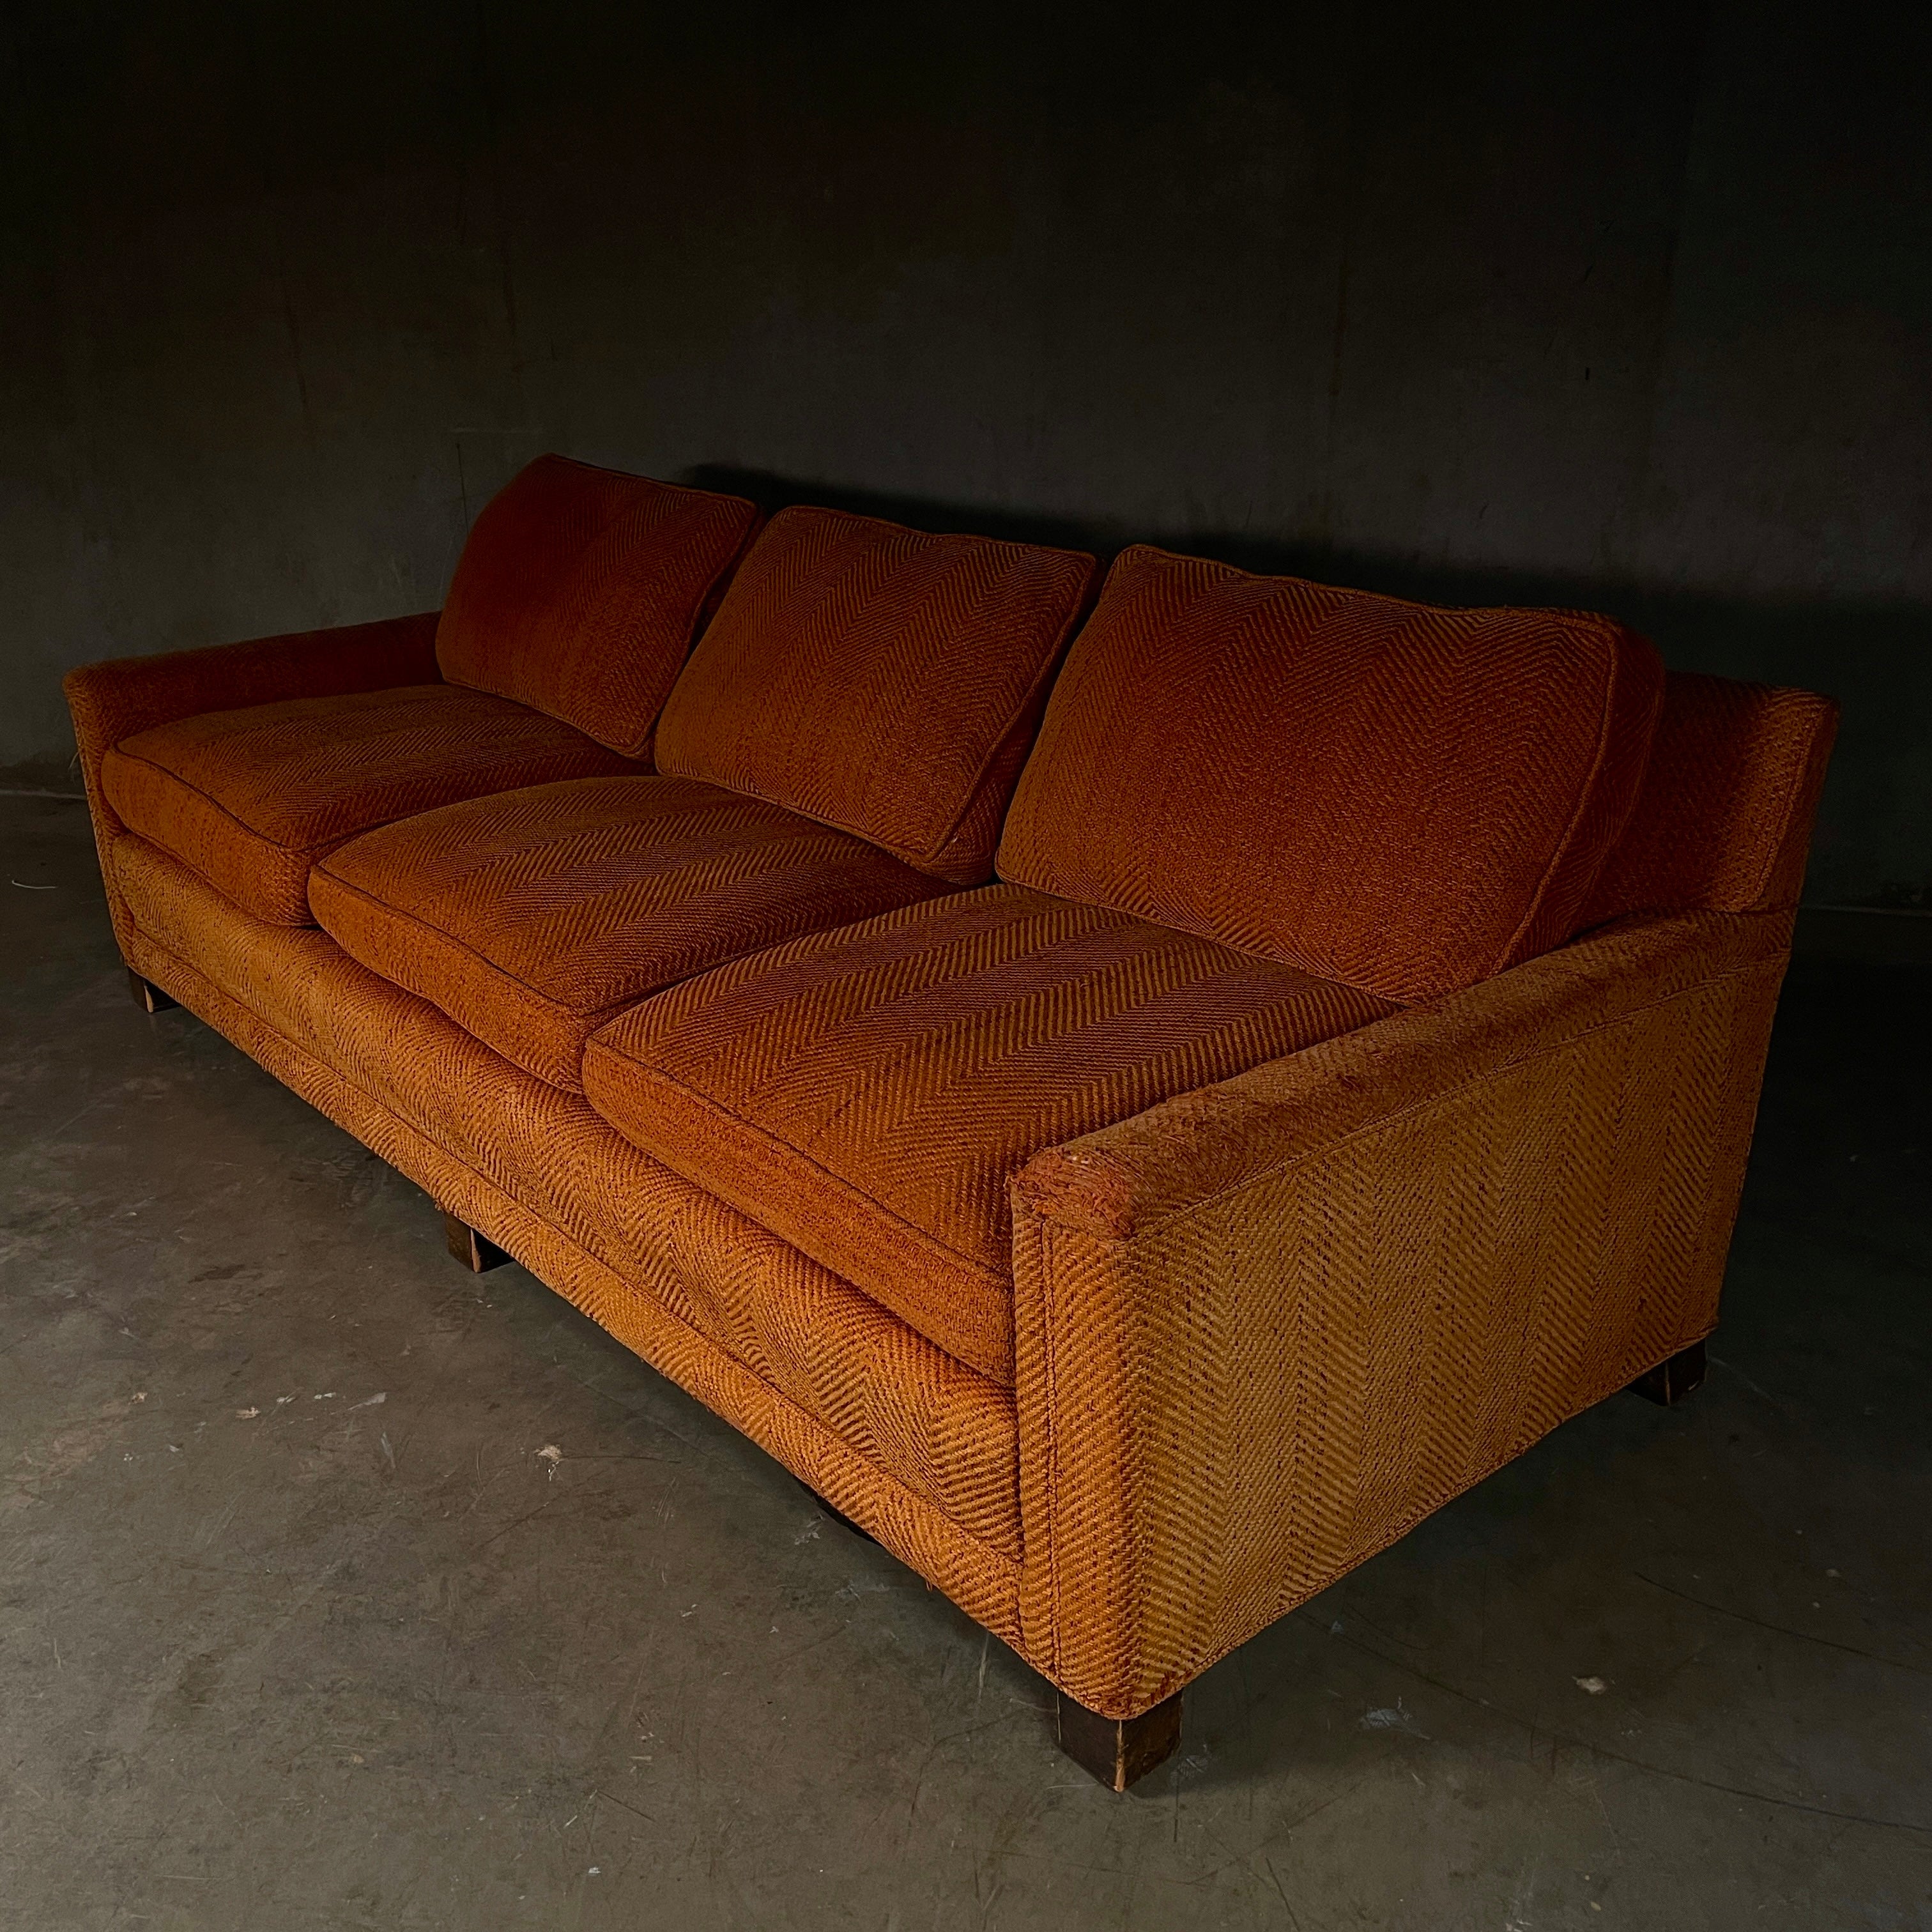 1960 MCM Sofa by John Stuart inc.